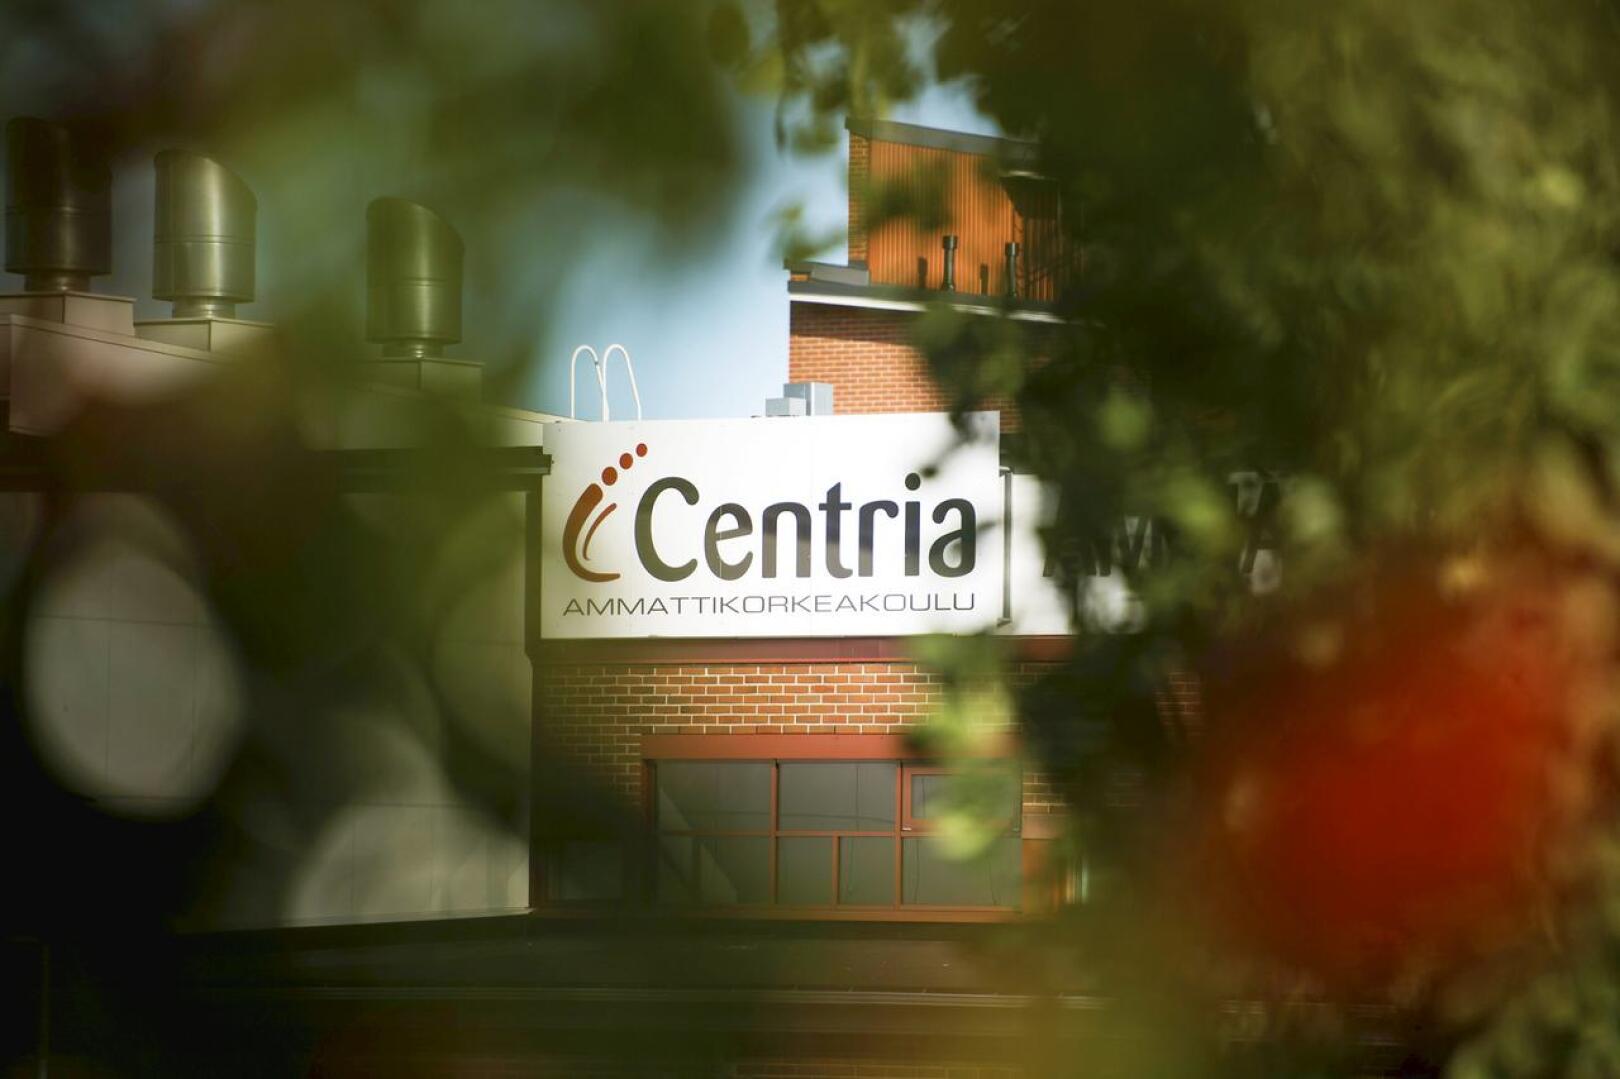 Centria-ammattikorkeakoulun hallitus käsittelee seuraavan kerran aloituspaikkastrategiaansa lokakuun lopulla.